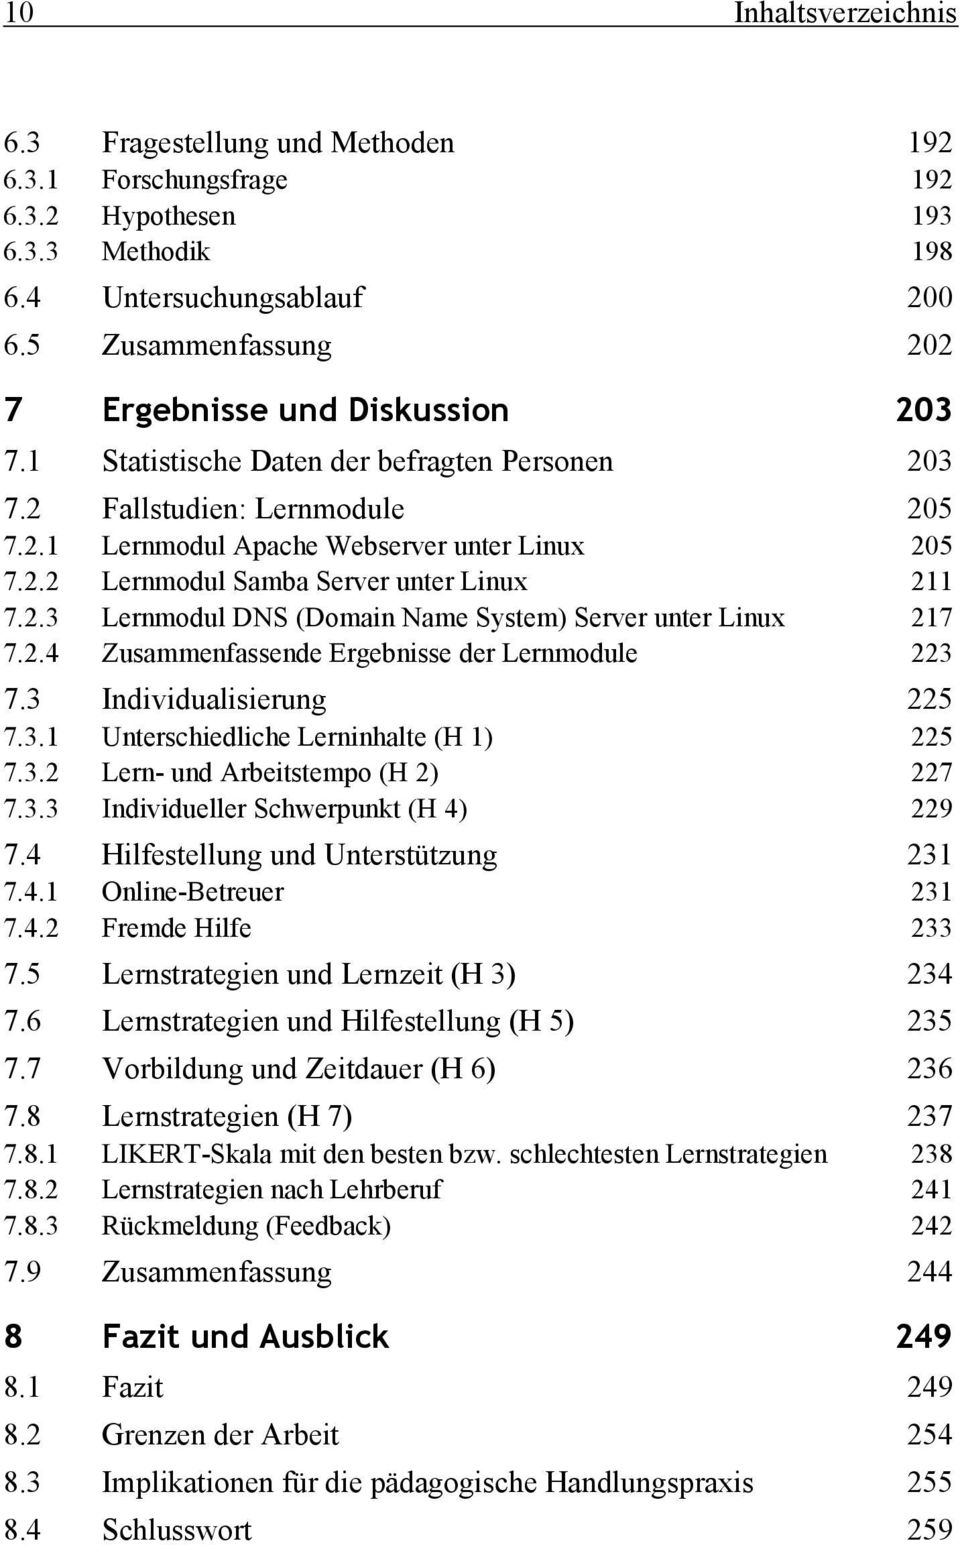 2.3 Lernmodul DNS (Domain Name System) Server unter Linux 217 7.2.4 Zusammenfassende Ergebnisse der Lernmodule 223 7.3 Individualisierung 225 7.3.1 Unterschiedliche Lerninhalte (H 1) 225 7.3.2 Lern- und Arbeitstempo (H 2) 227 7.